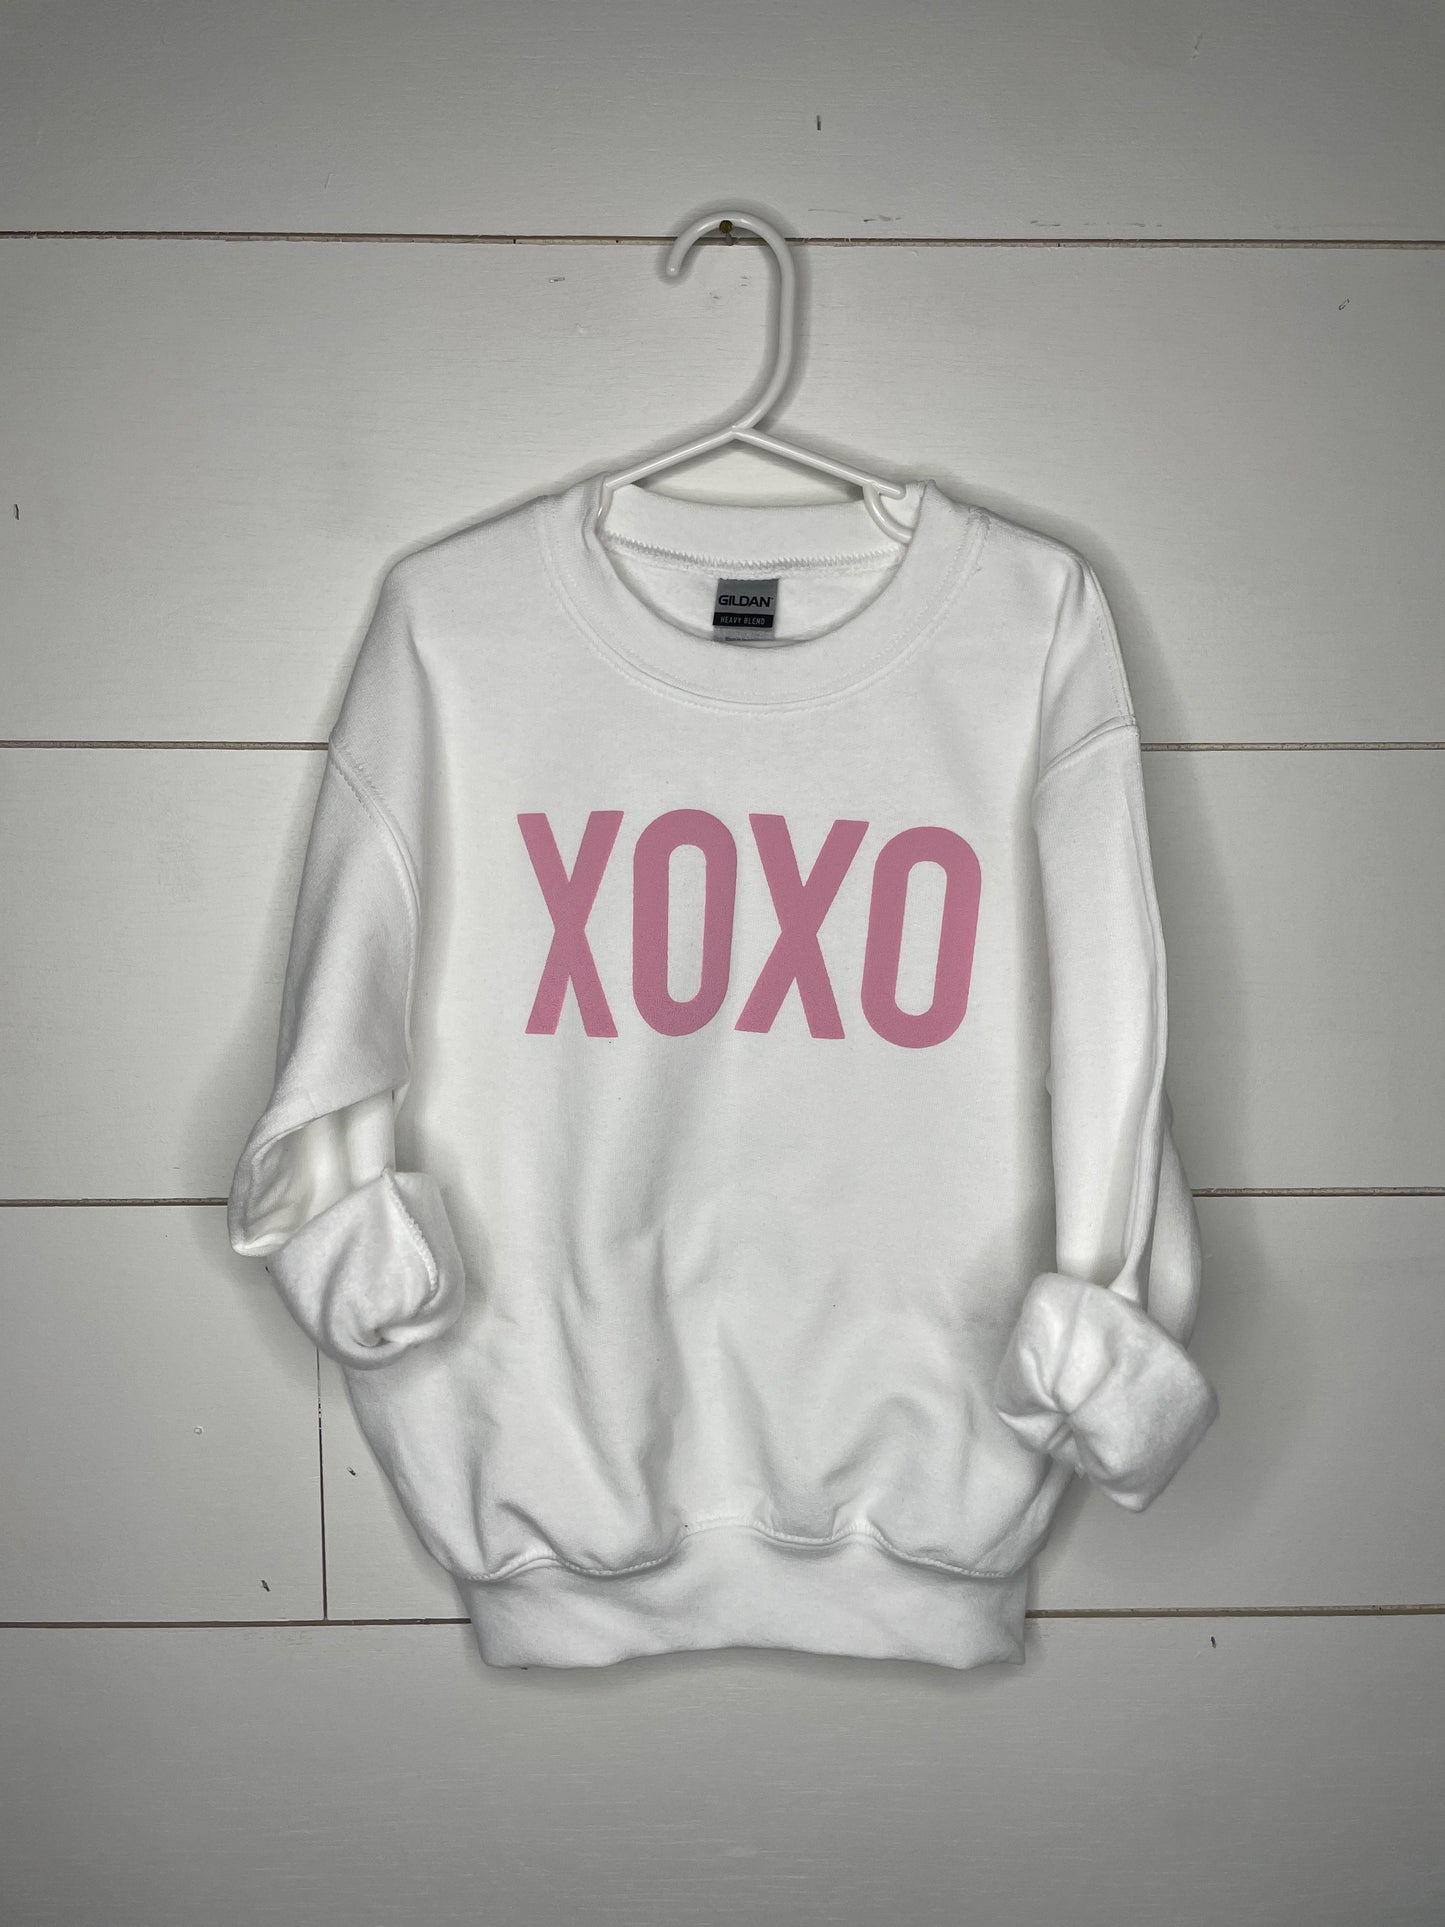 XOXO Tees and Sweatshirts